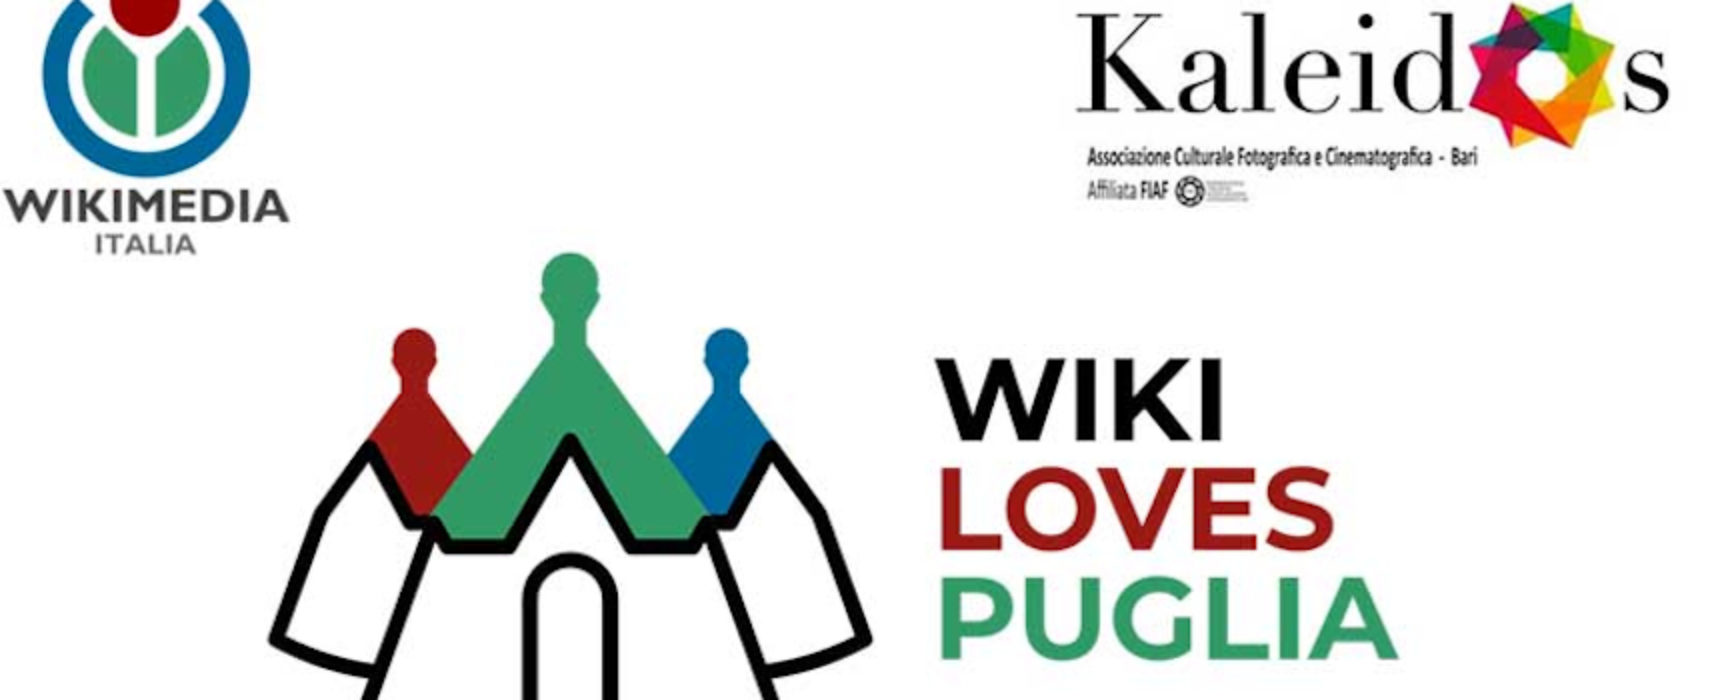 Wiki Loves Puglia 2020: iscrizioni al concorso fotografico dedicato al territorio regionale